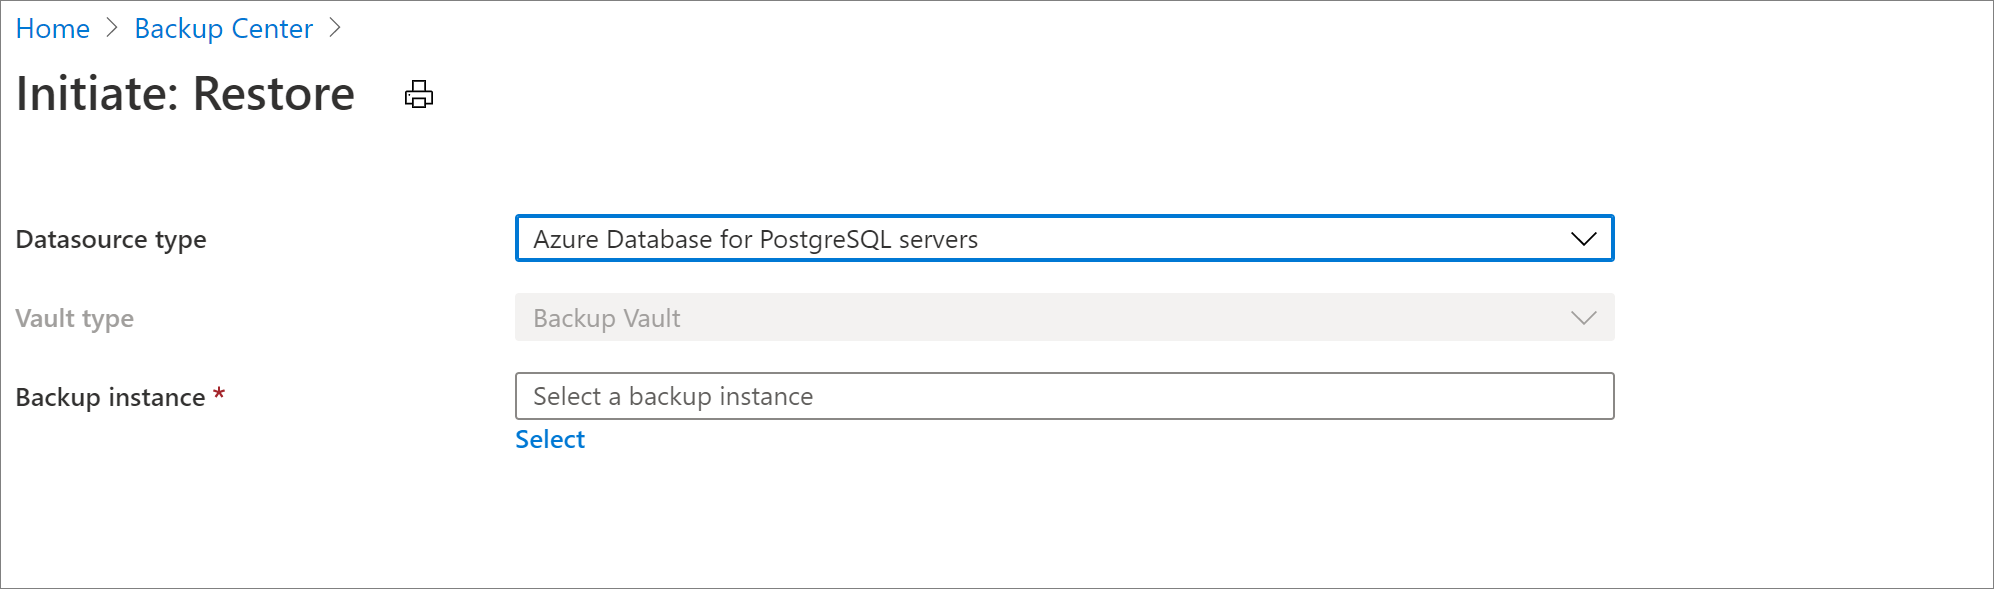 Select datasource for Azure Database for PostgreSQL Server restore